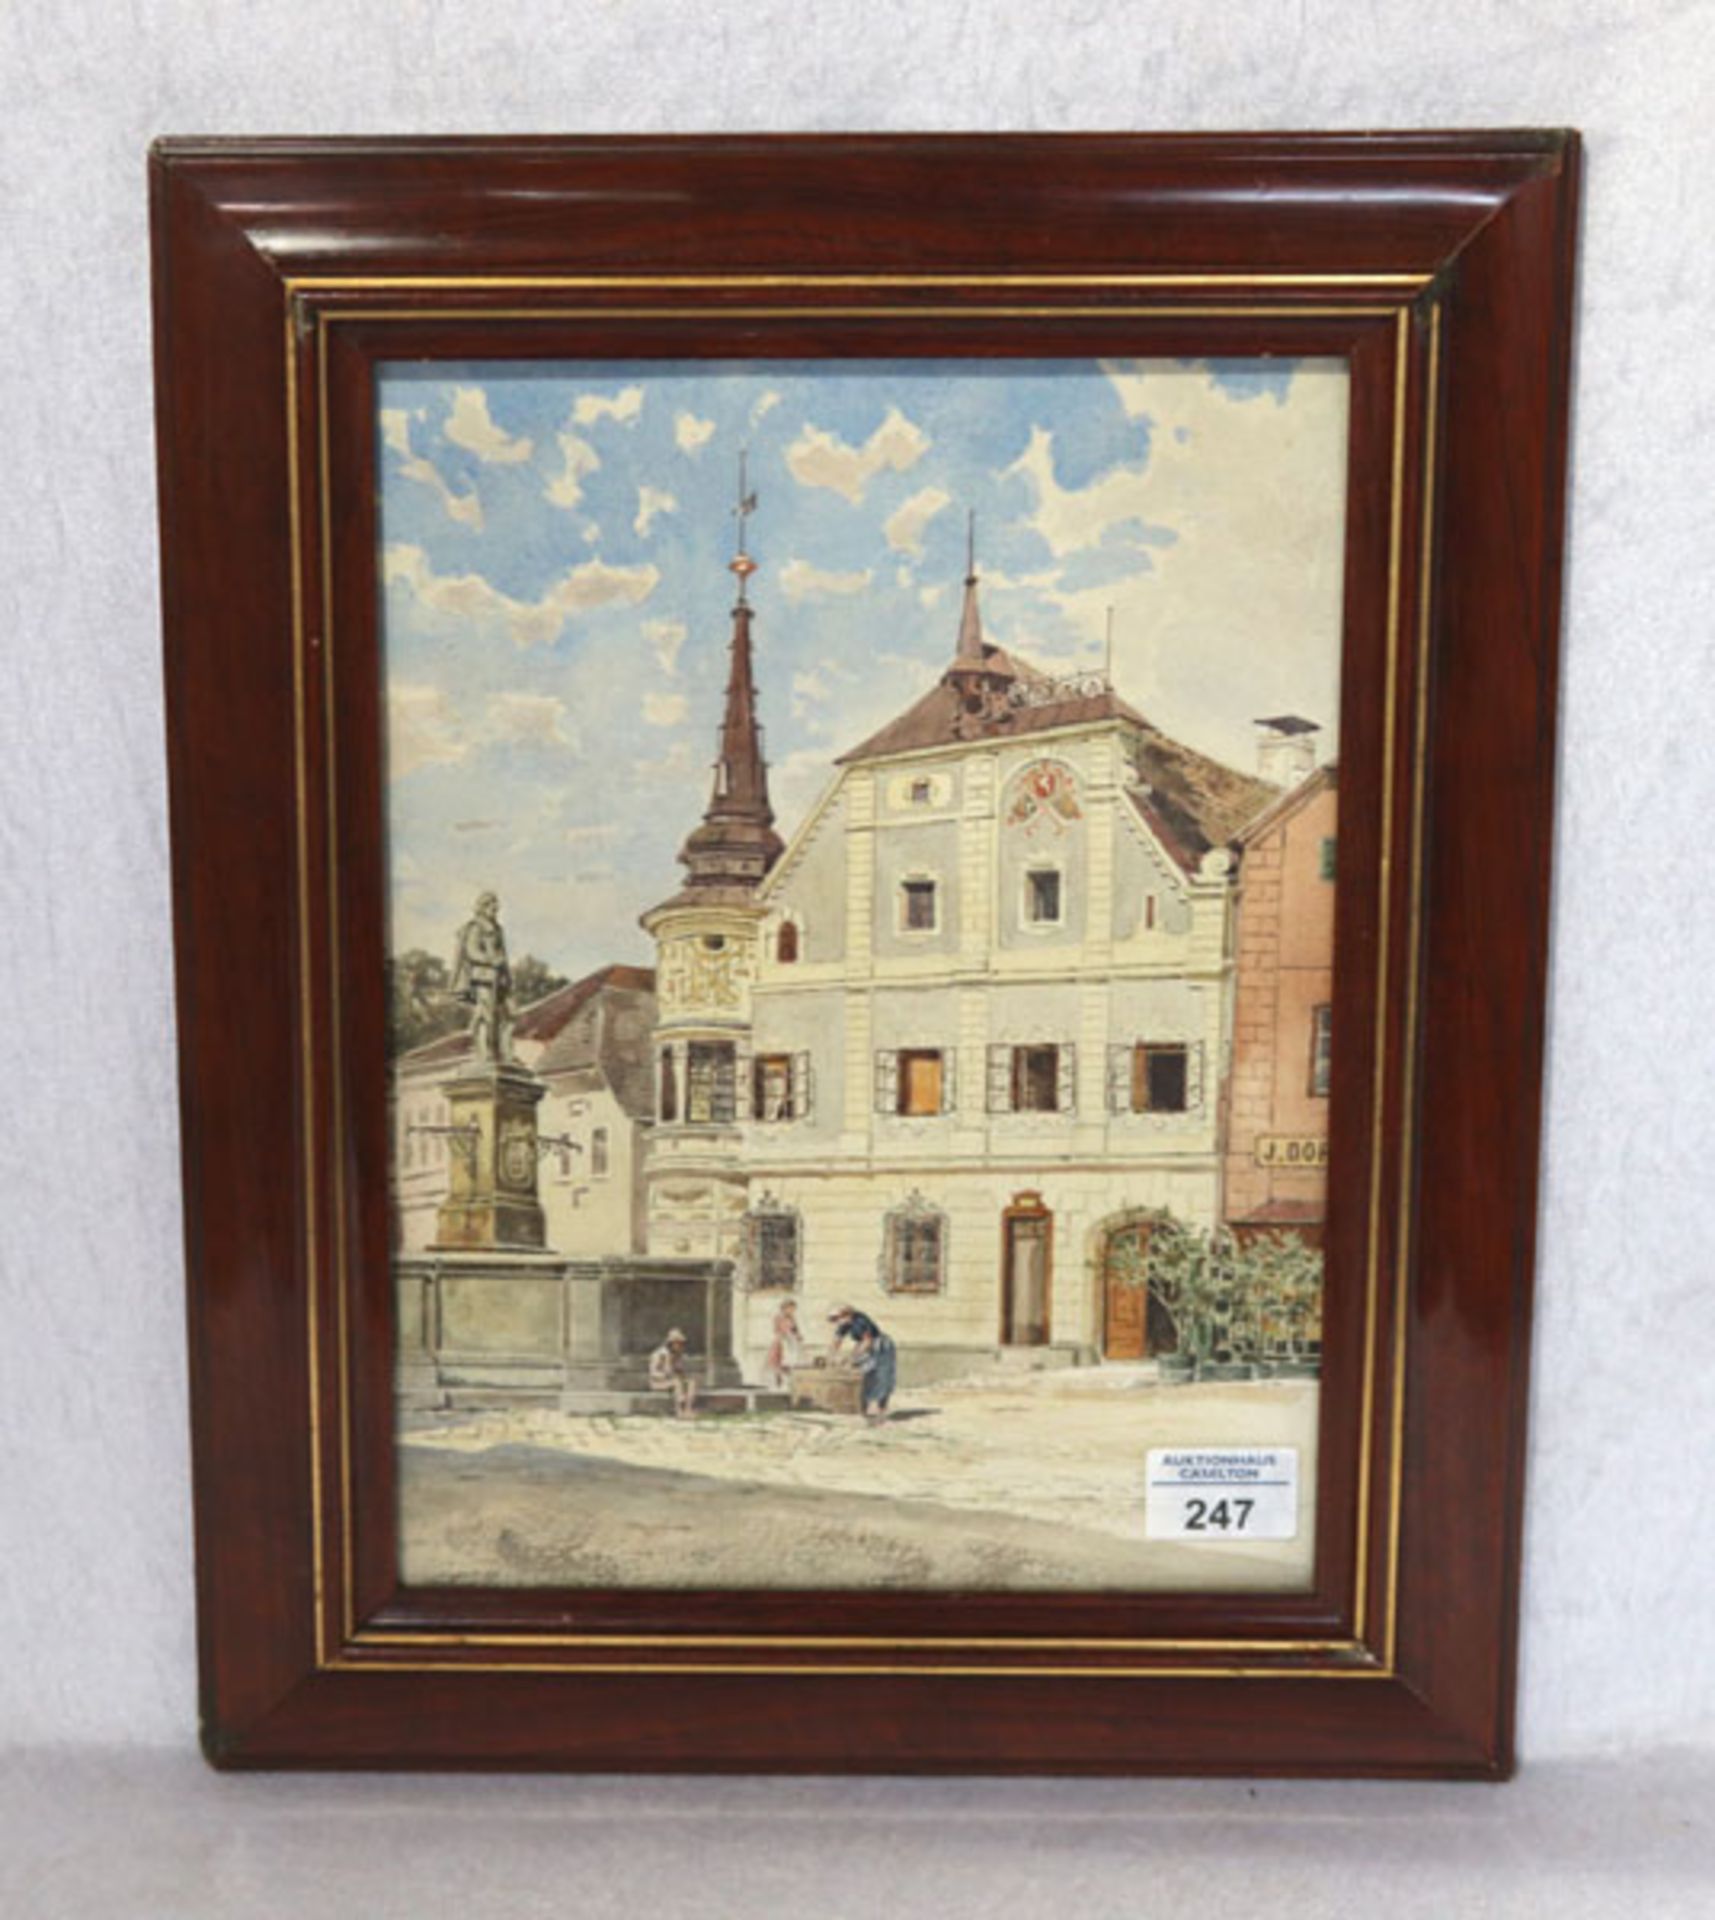 Zeichnung/Aquarell 'Marktplatz Grein', signiert Fritz Lach, datiert 1890, * 1868 Linz + 1933 Wien,